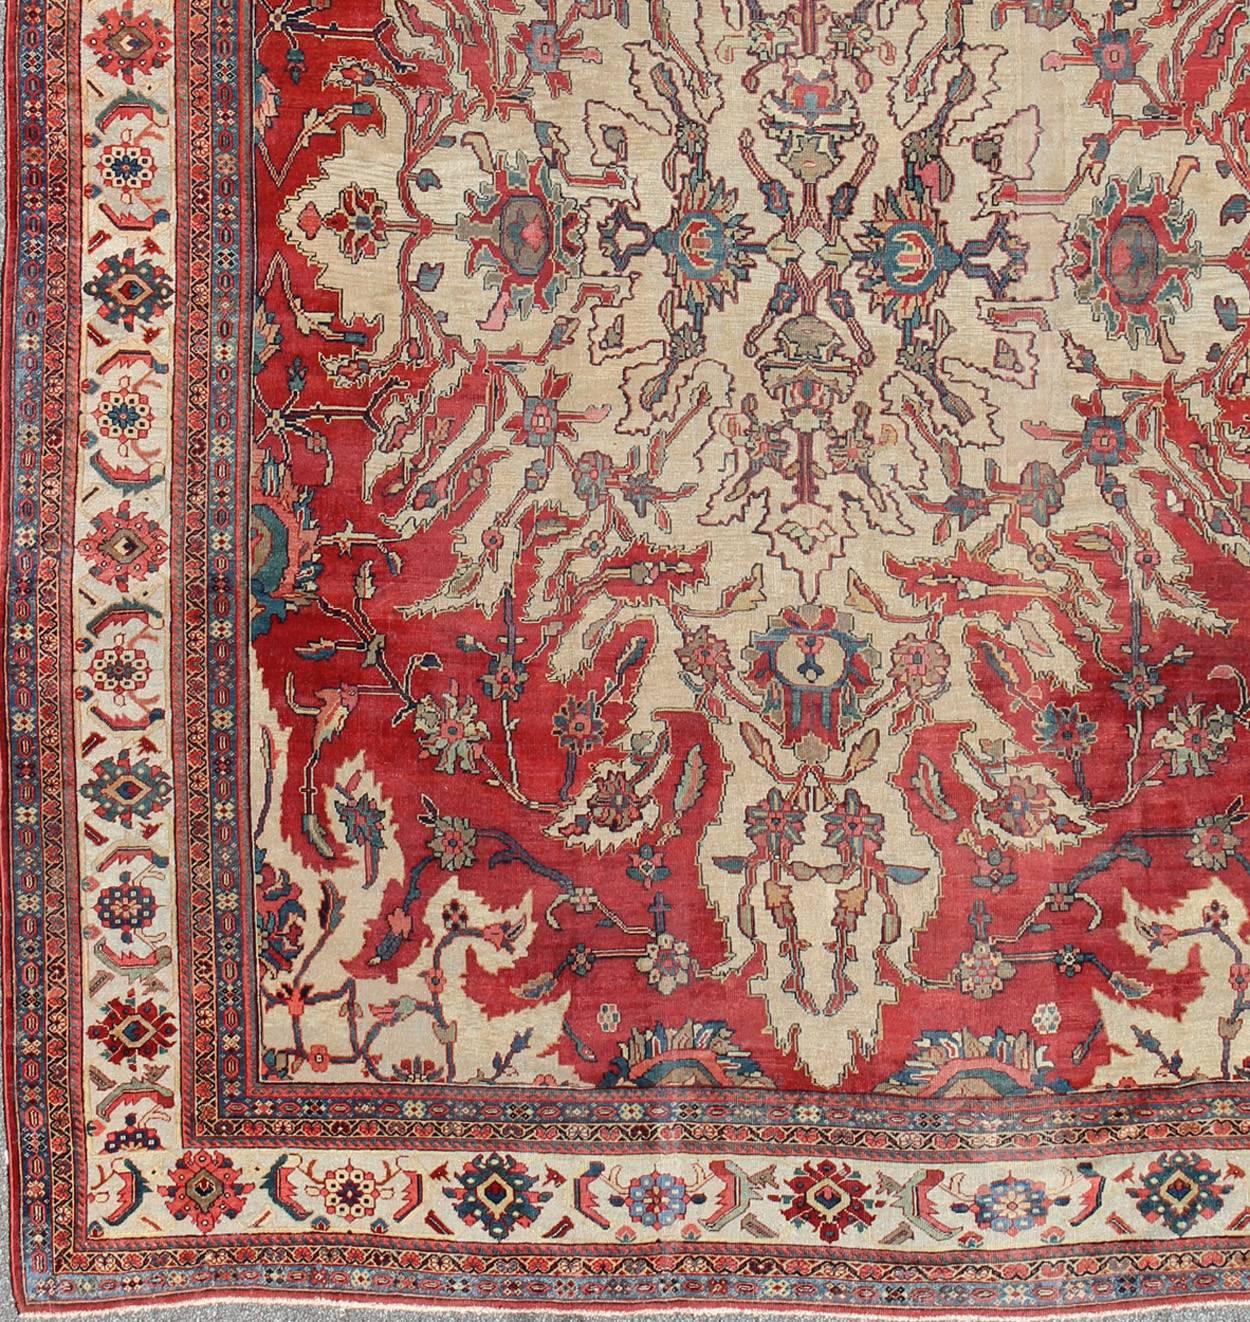 Grand tapis persan antique Sultanabad, tapis E-1209, pays d'origine / type : Iran / Sultanabad, vers le début du 20ème siècle.

Mesures : 12'2 x 16'

Ce magnifique tapis persan ancien de Sultanabad s'inspire des motifs de la nature. Le médaillon